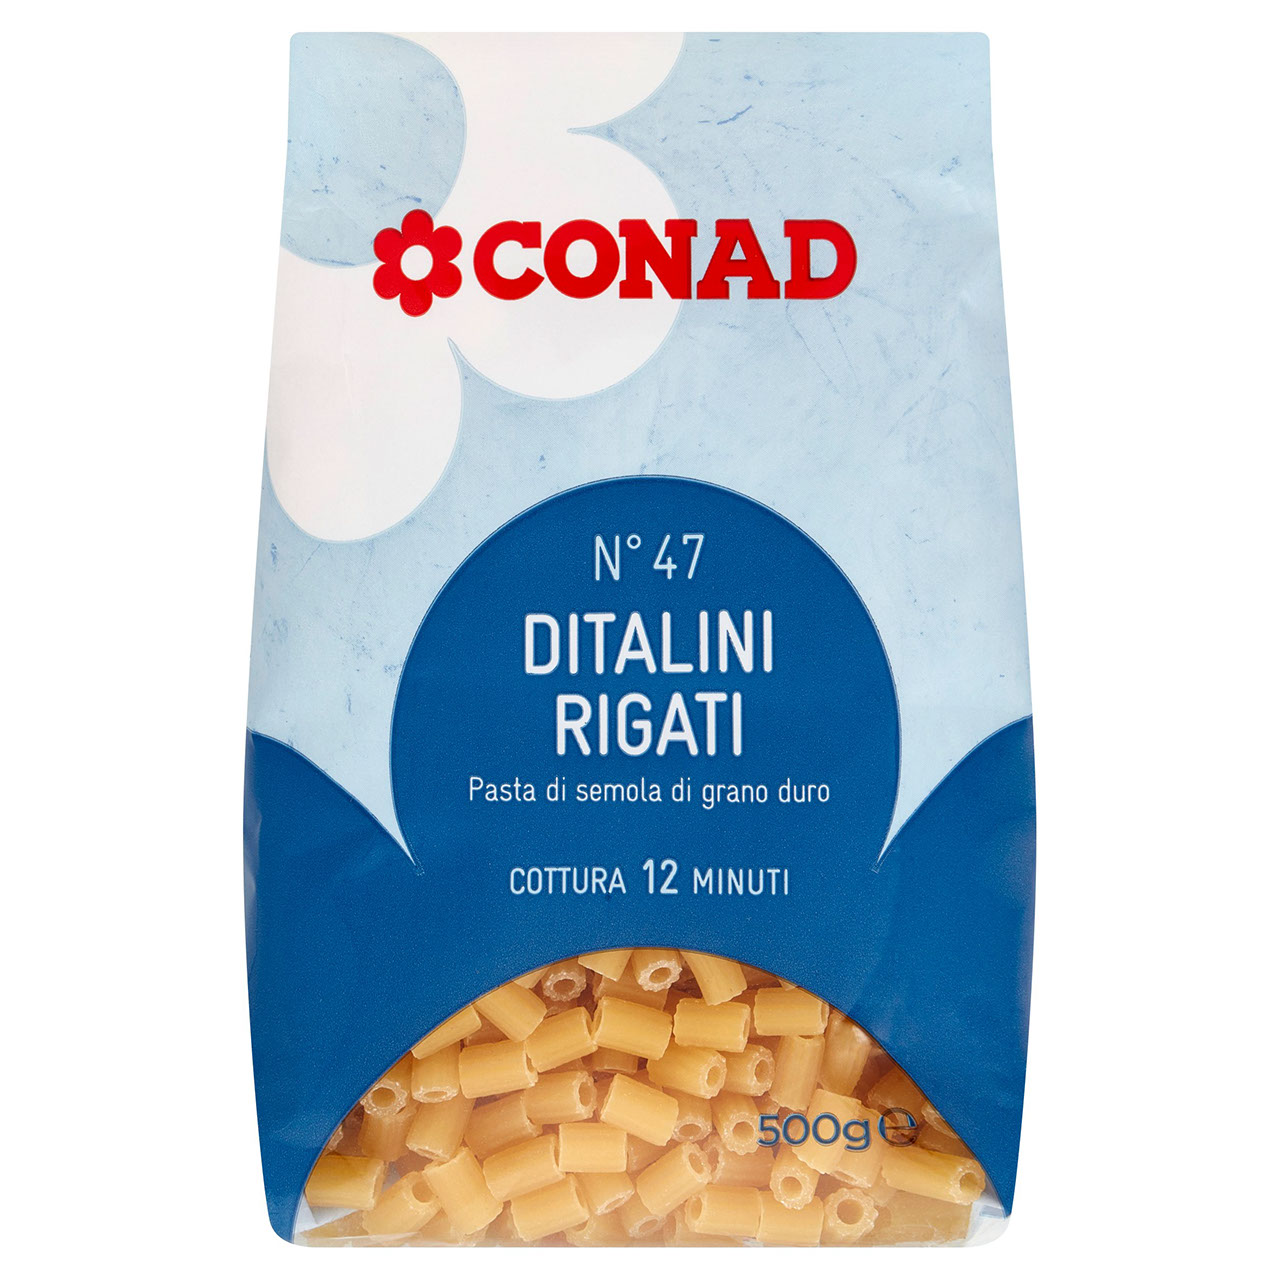 Ditalini Rigati 500 g Conad in vendita online